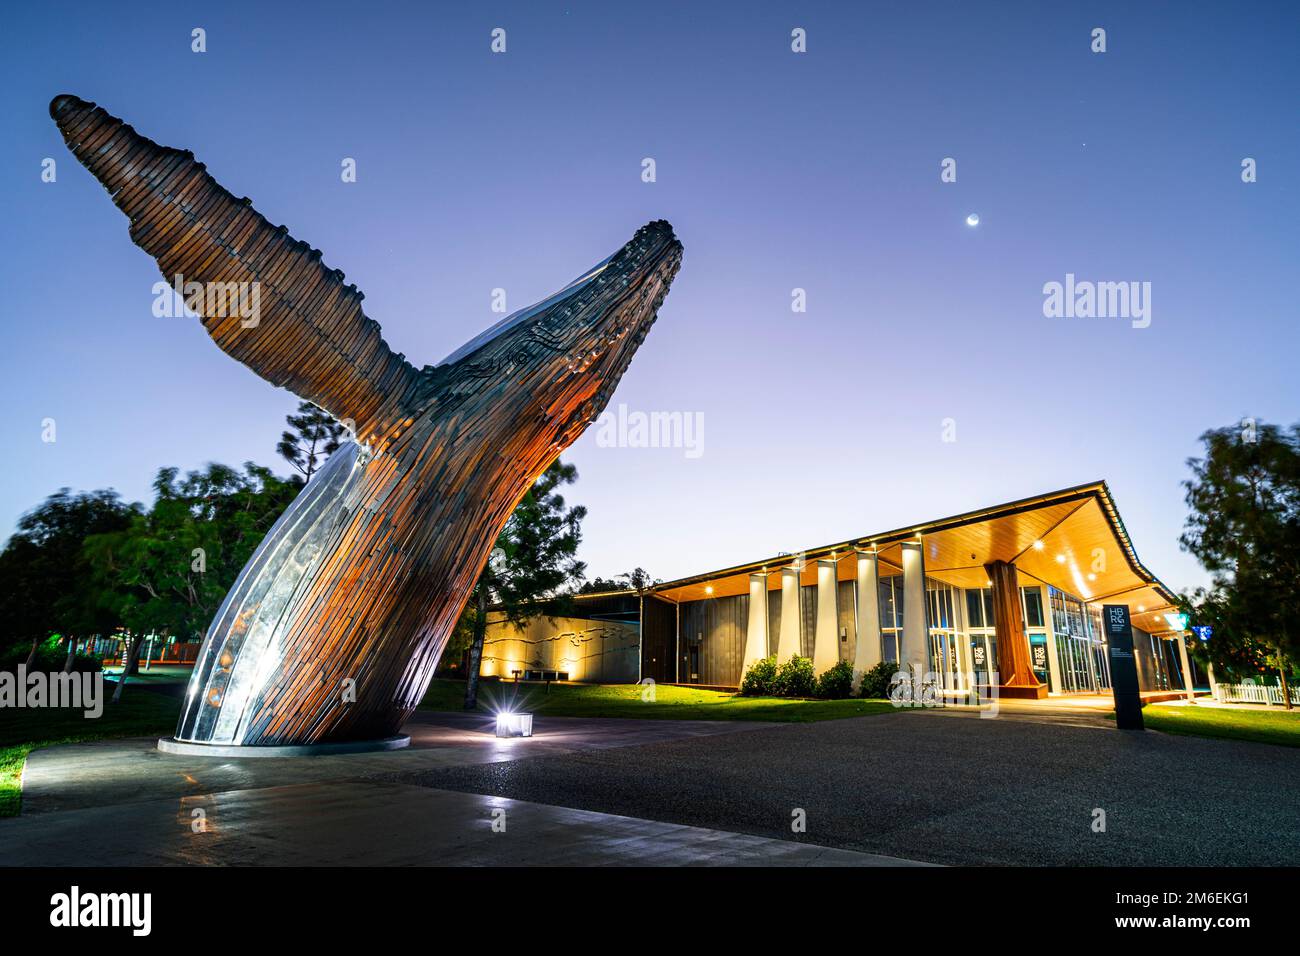 Sculpture de Nala la baleine à bosse a été illuminée le soir à l'extérieur de la galerie régionale de la côte du Fraser. Hervey Bay Queensland Australie Banque D'Images